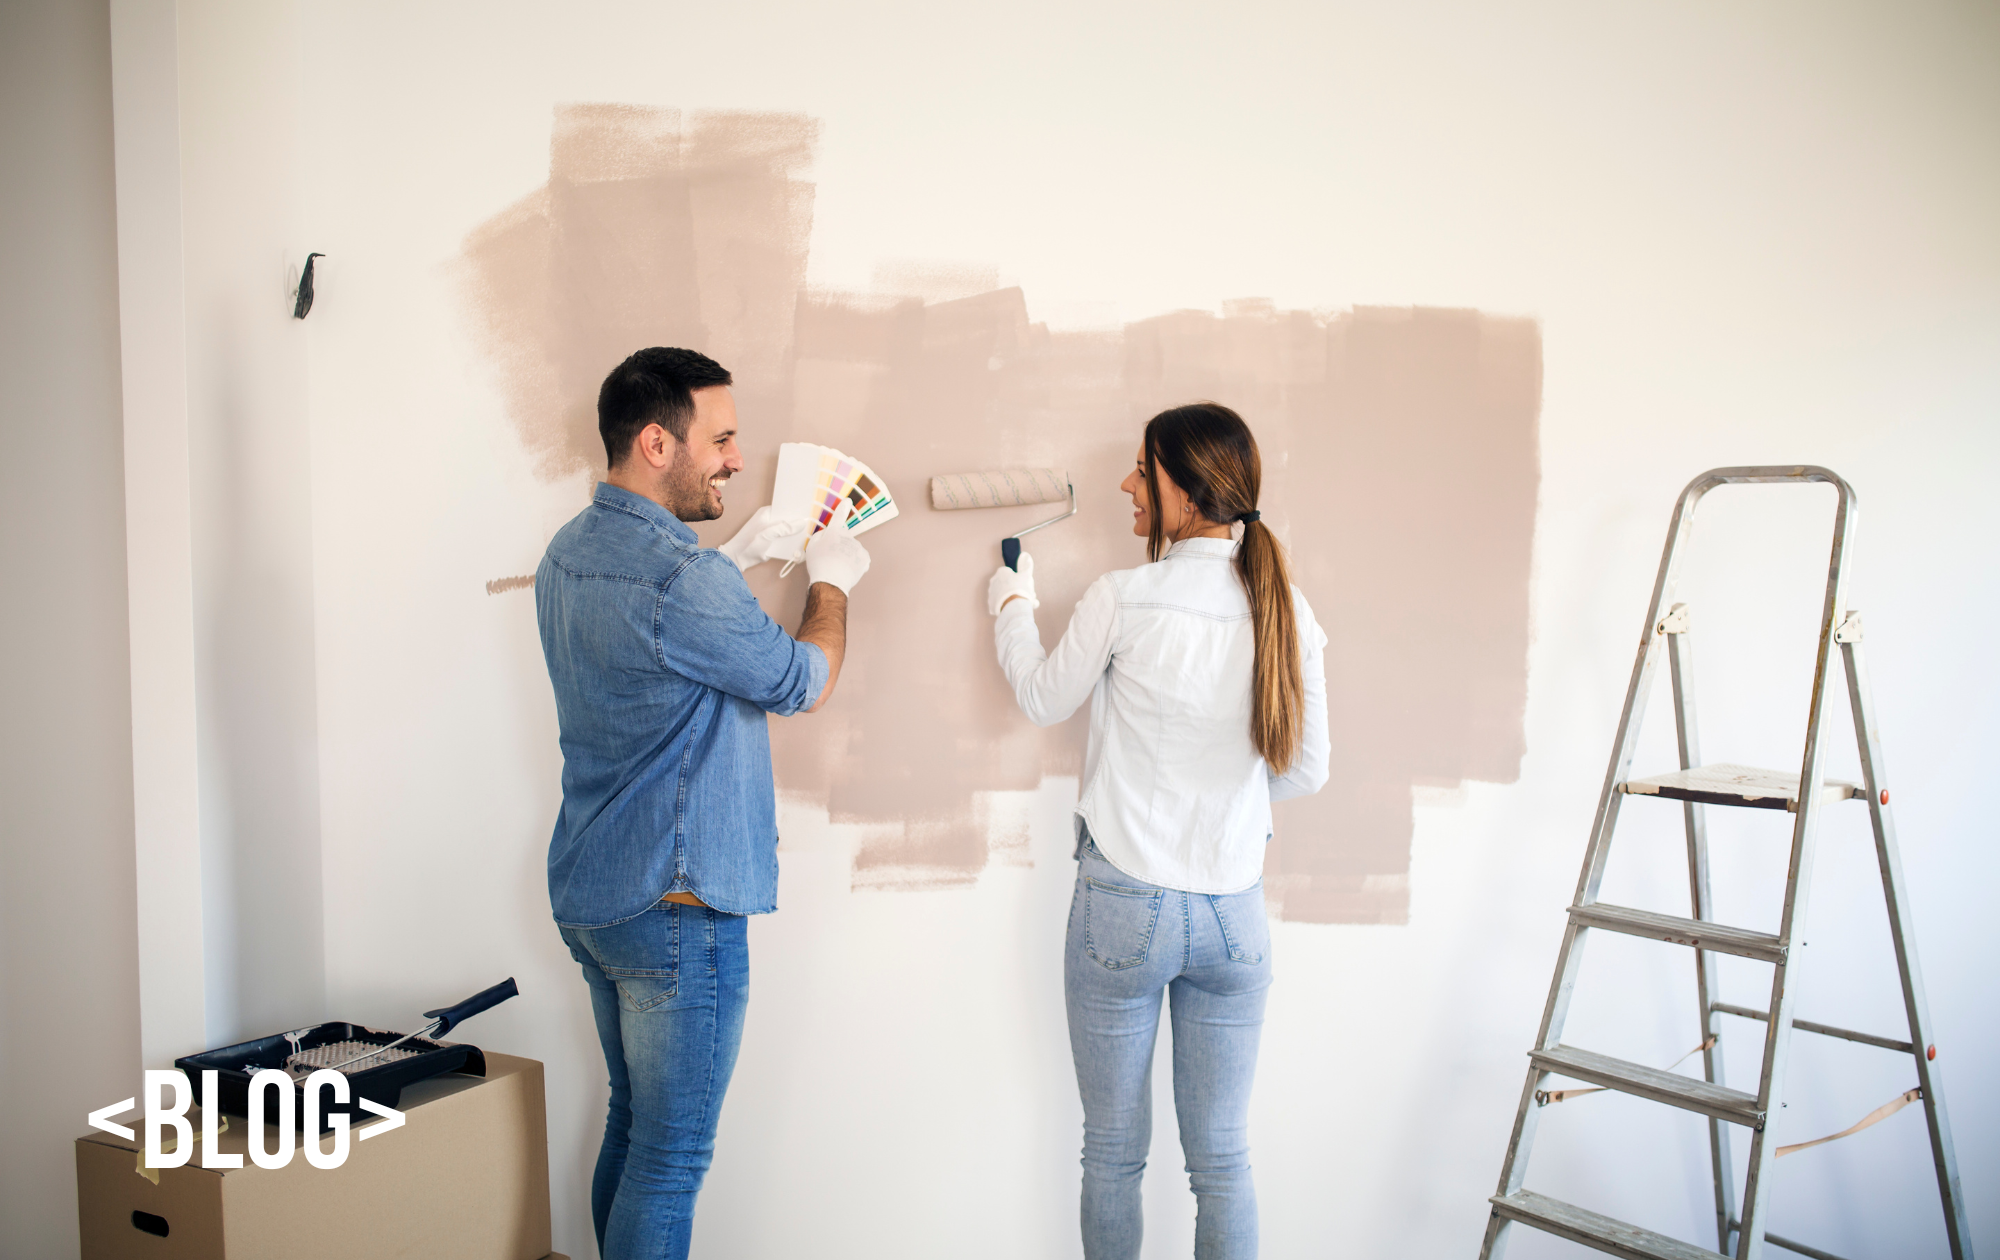 imagem descreve um casal escolhendo a cor para pintar a parede, referente ao blog o que pode ou não fazer em apartamento alugado